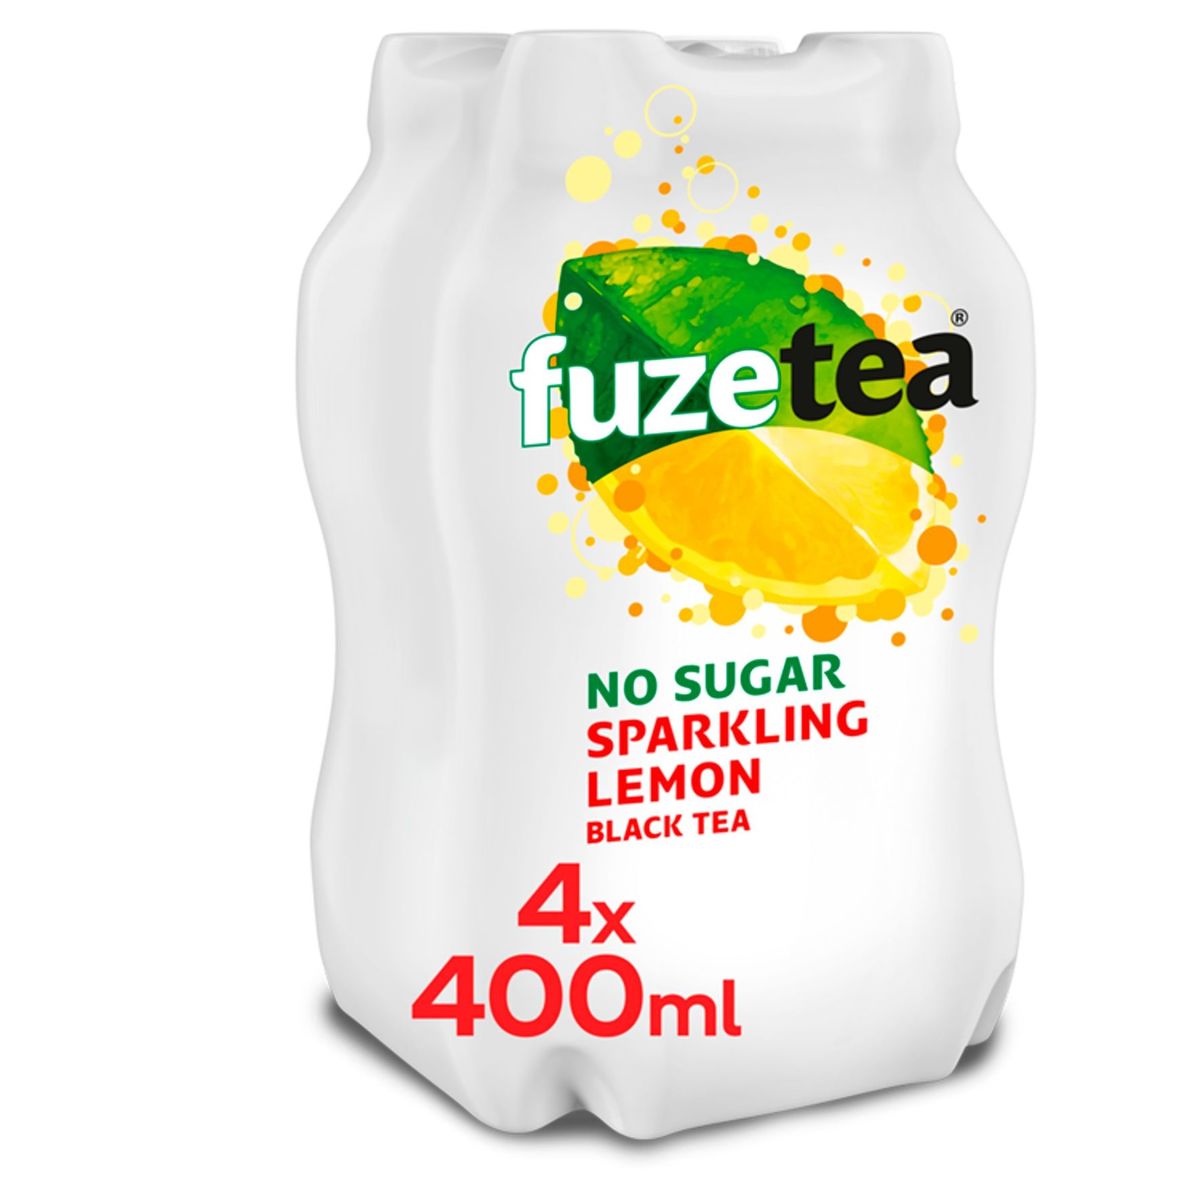 Fuze Tea Sparkling Lemon Black Tea Iced Tea 4 x 400 ml